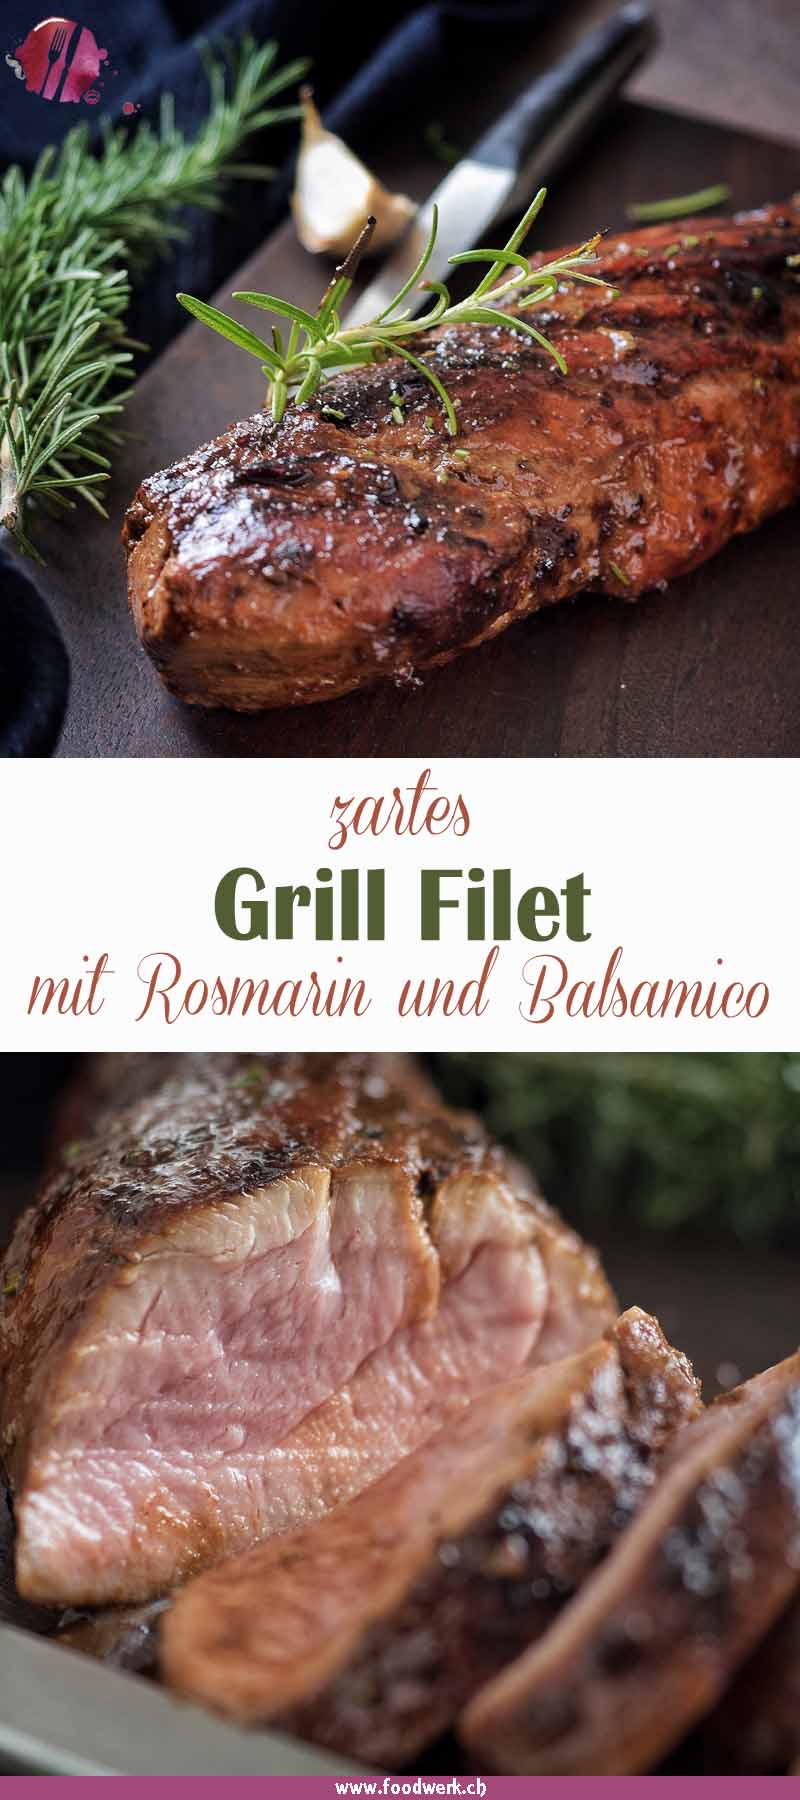 Das Grill Filet von foodwerk.ch, mit Balsamico Rosmarin Marinade.